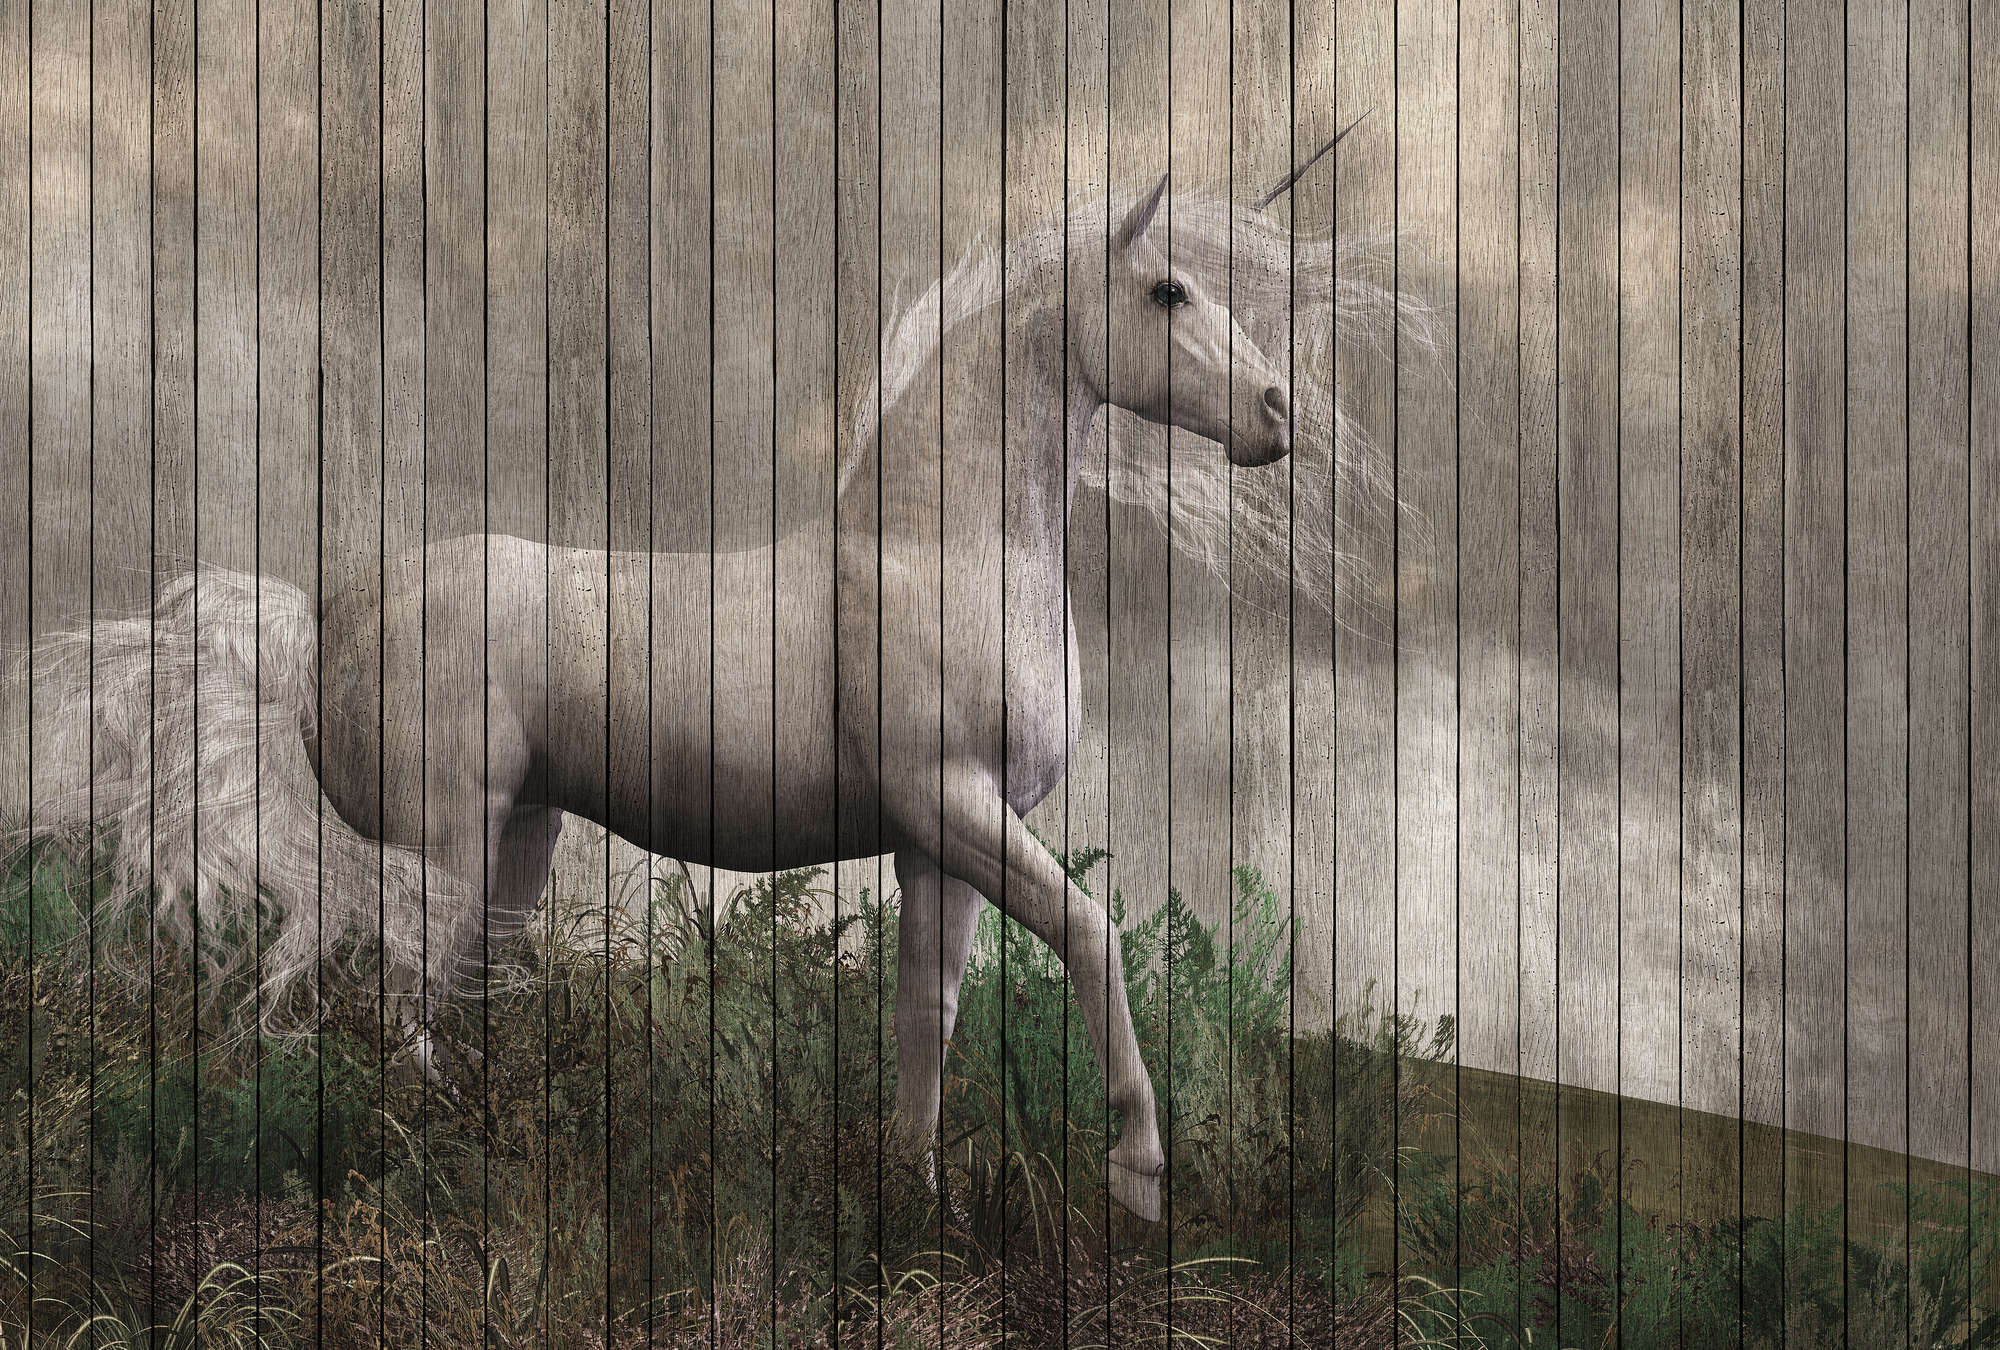             Fantasy 3 - Carta da parati unicorno con ottica in legno - Beige, Marrone | Panno liscio perlato
        